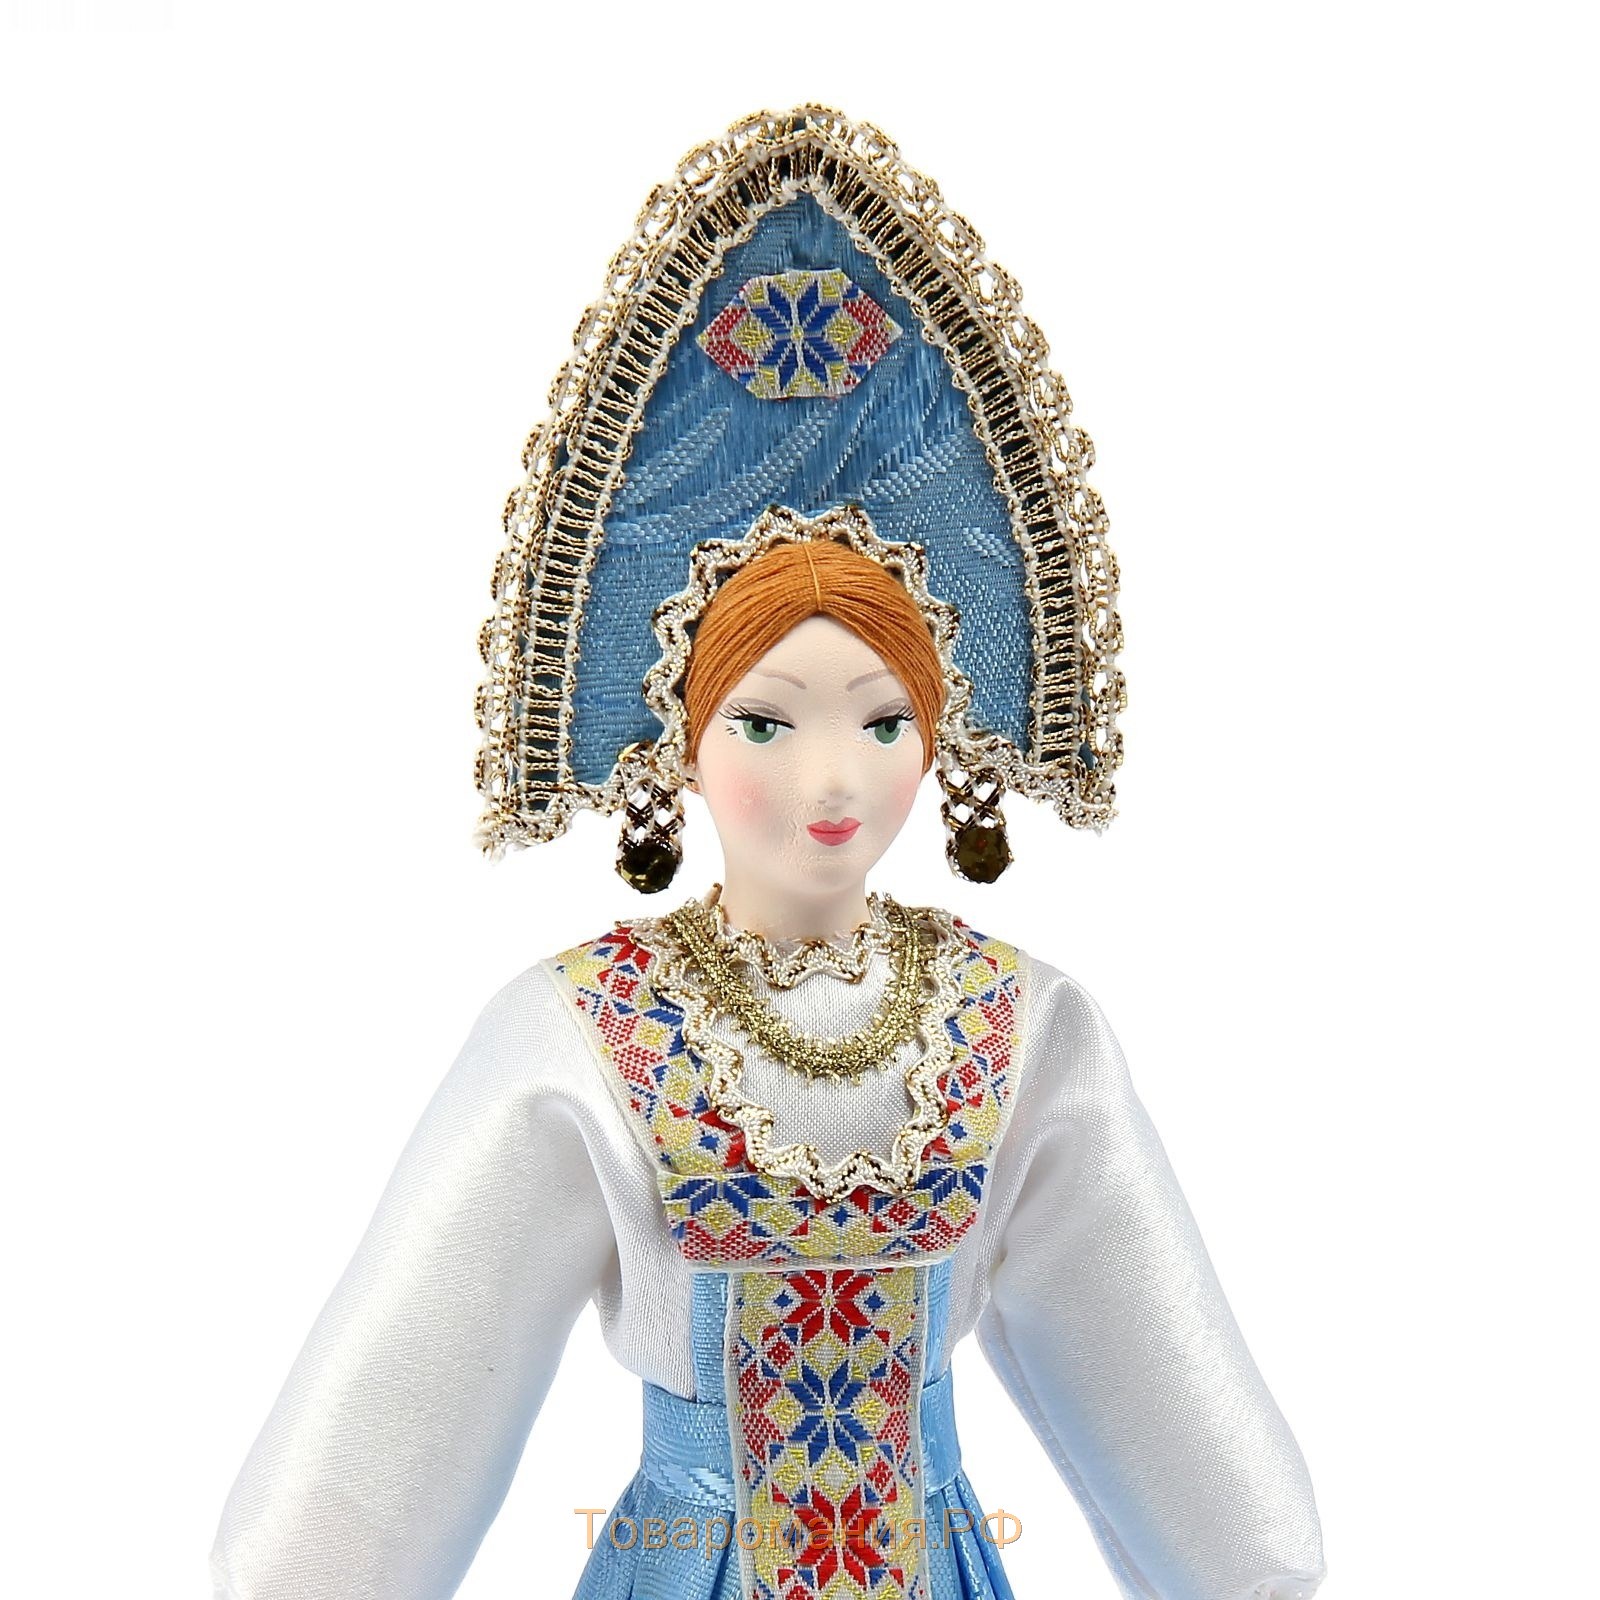 Сувенирная кукла "Мирослава" в праздничном костюме, Россия